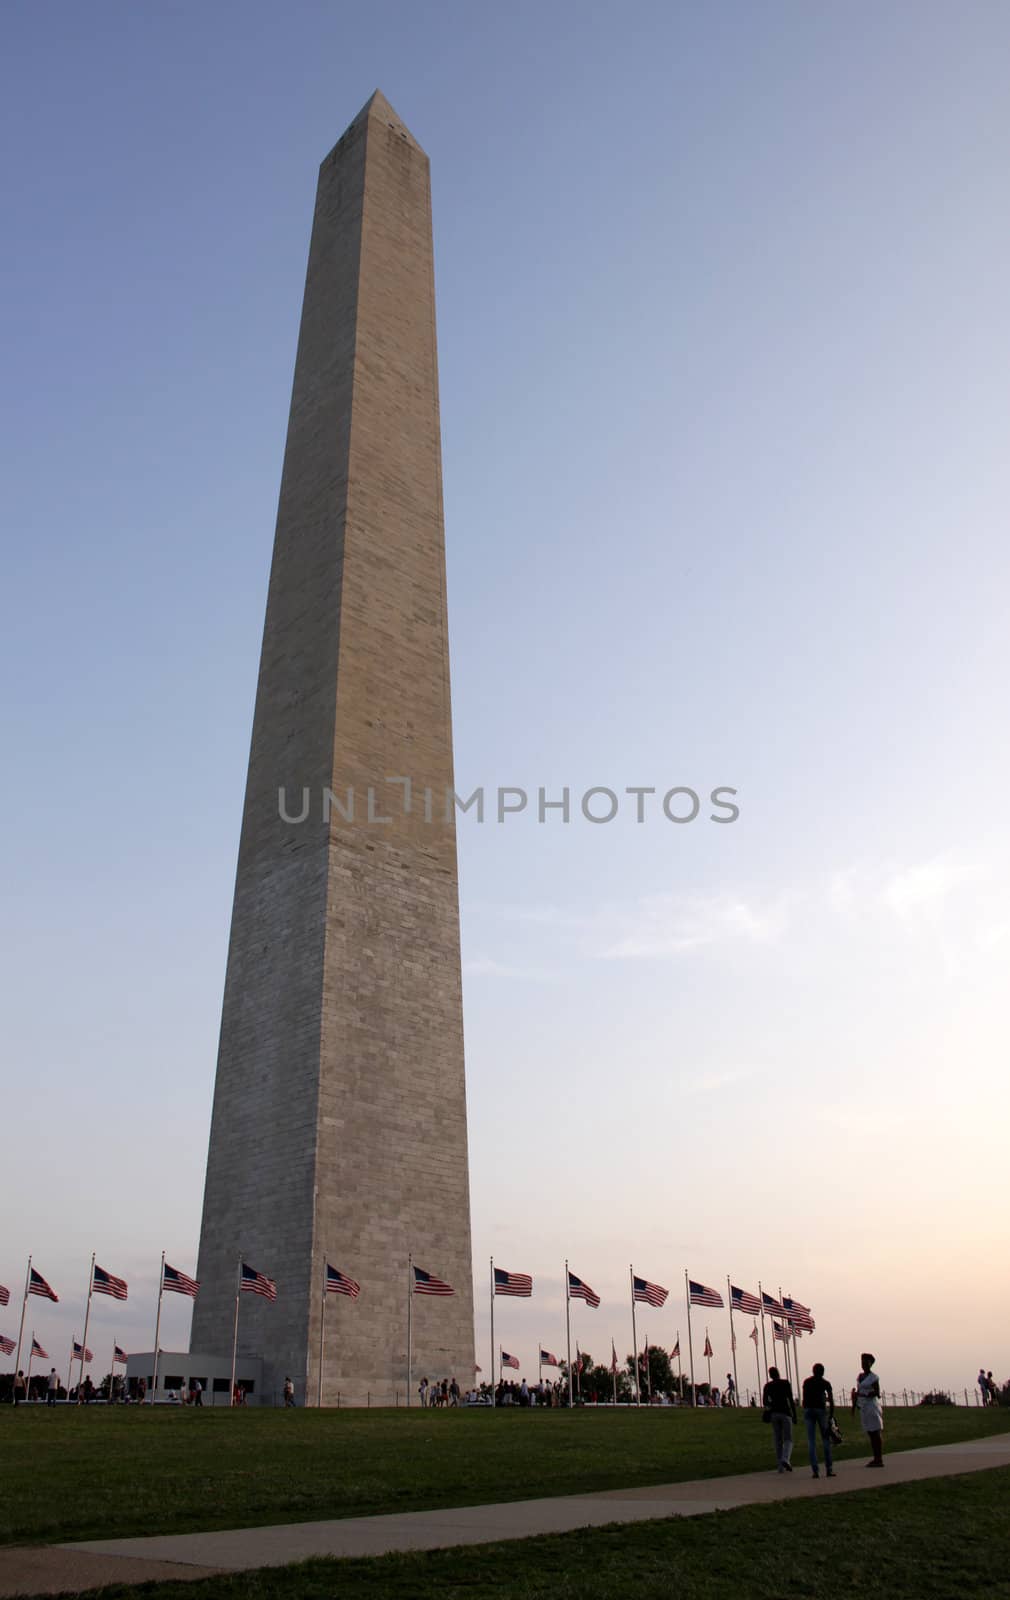 The base of the Washington monument shot at dusk, in Washington DC, USA.
